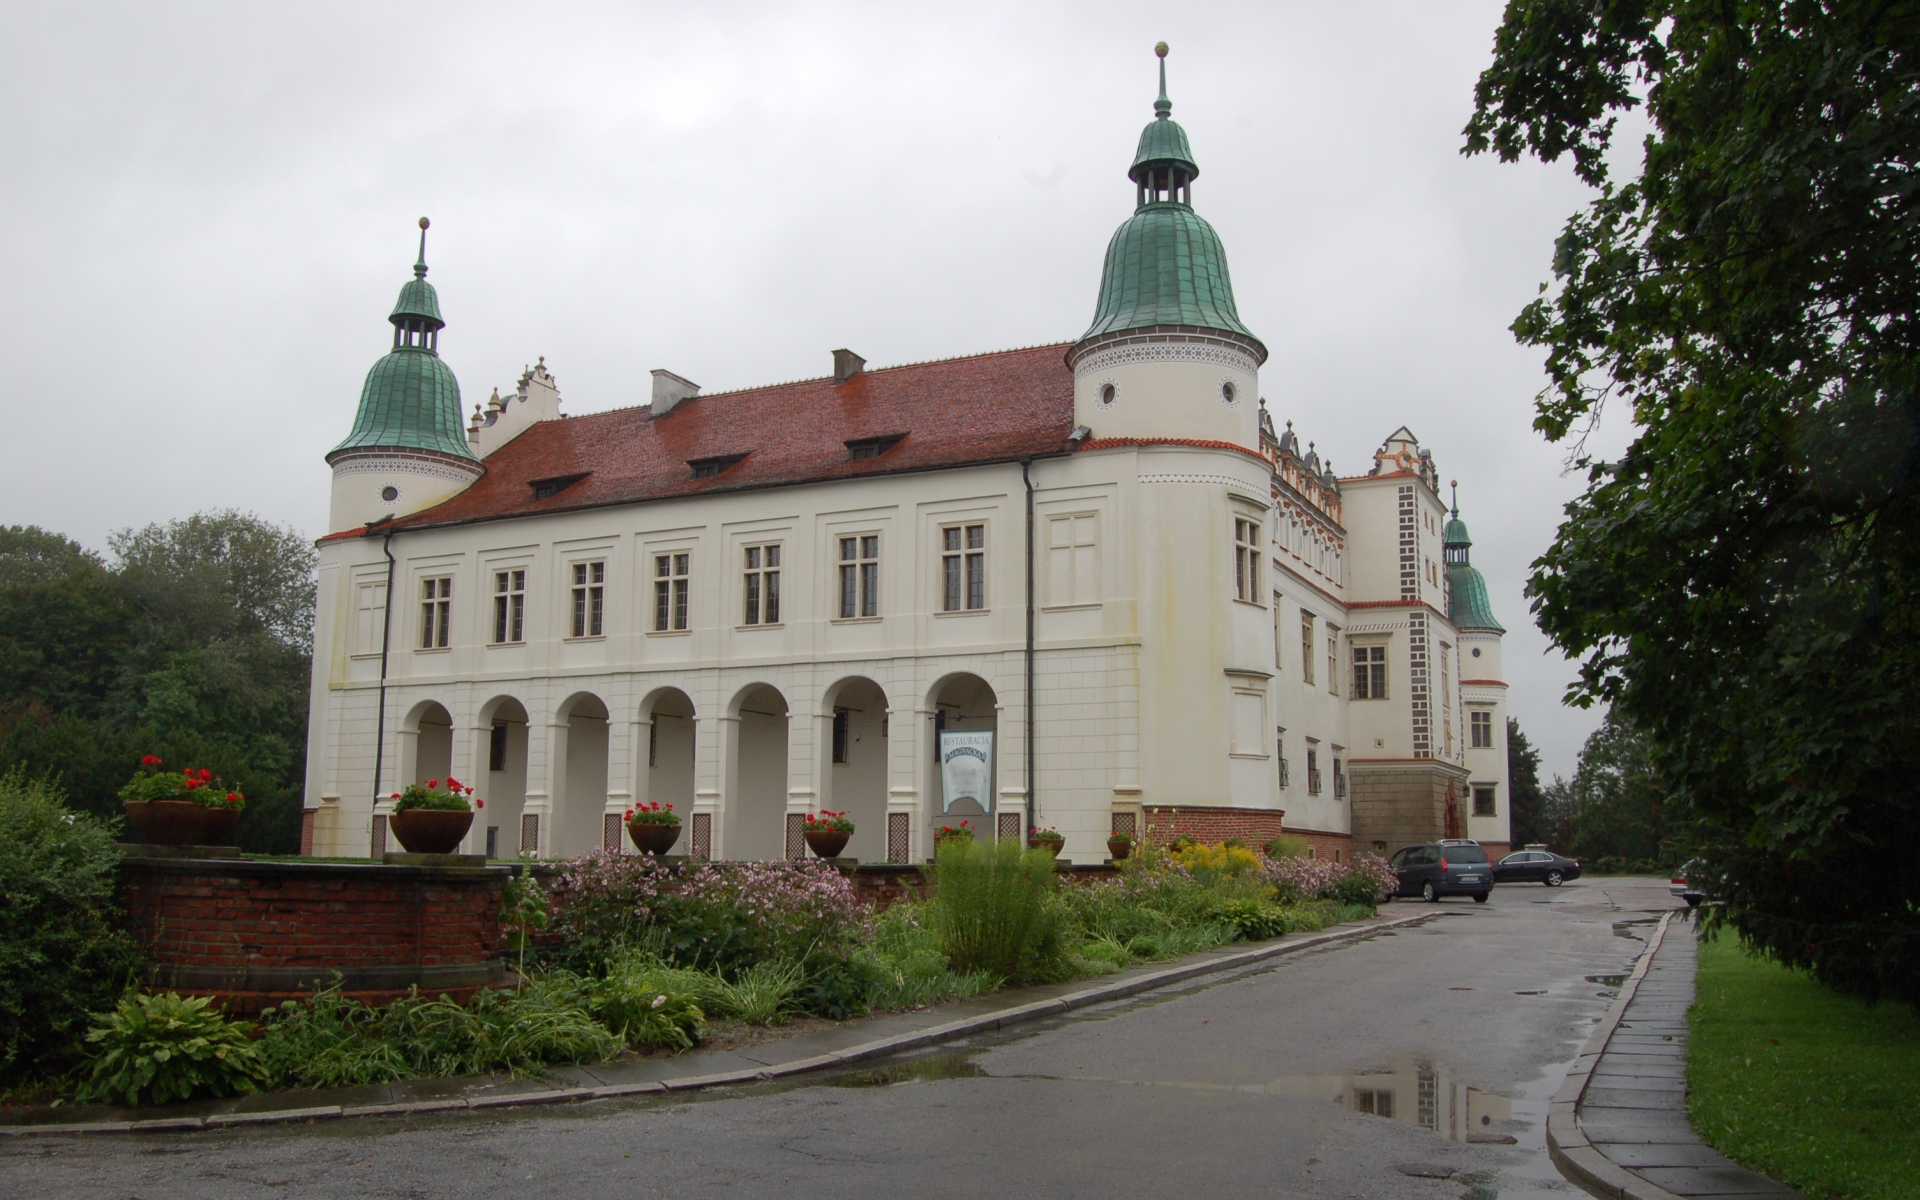 Baranów Sandomierski Castle #14